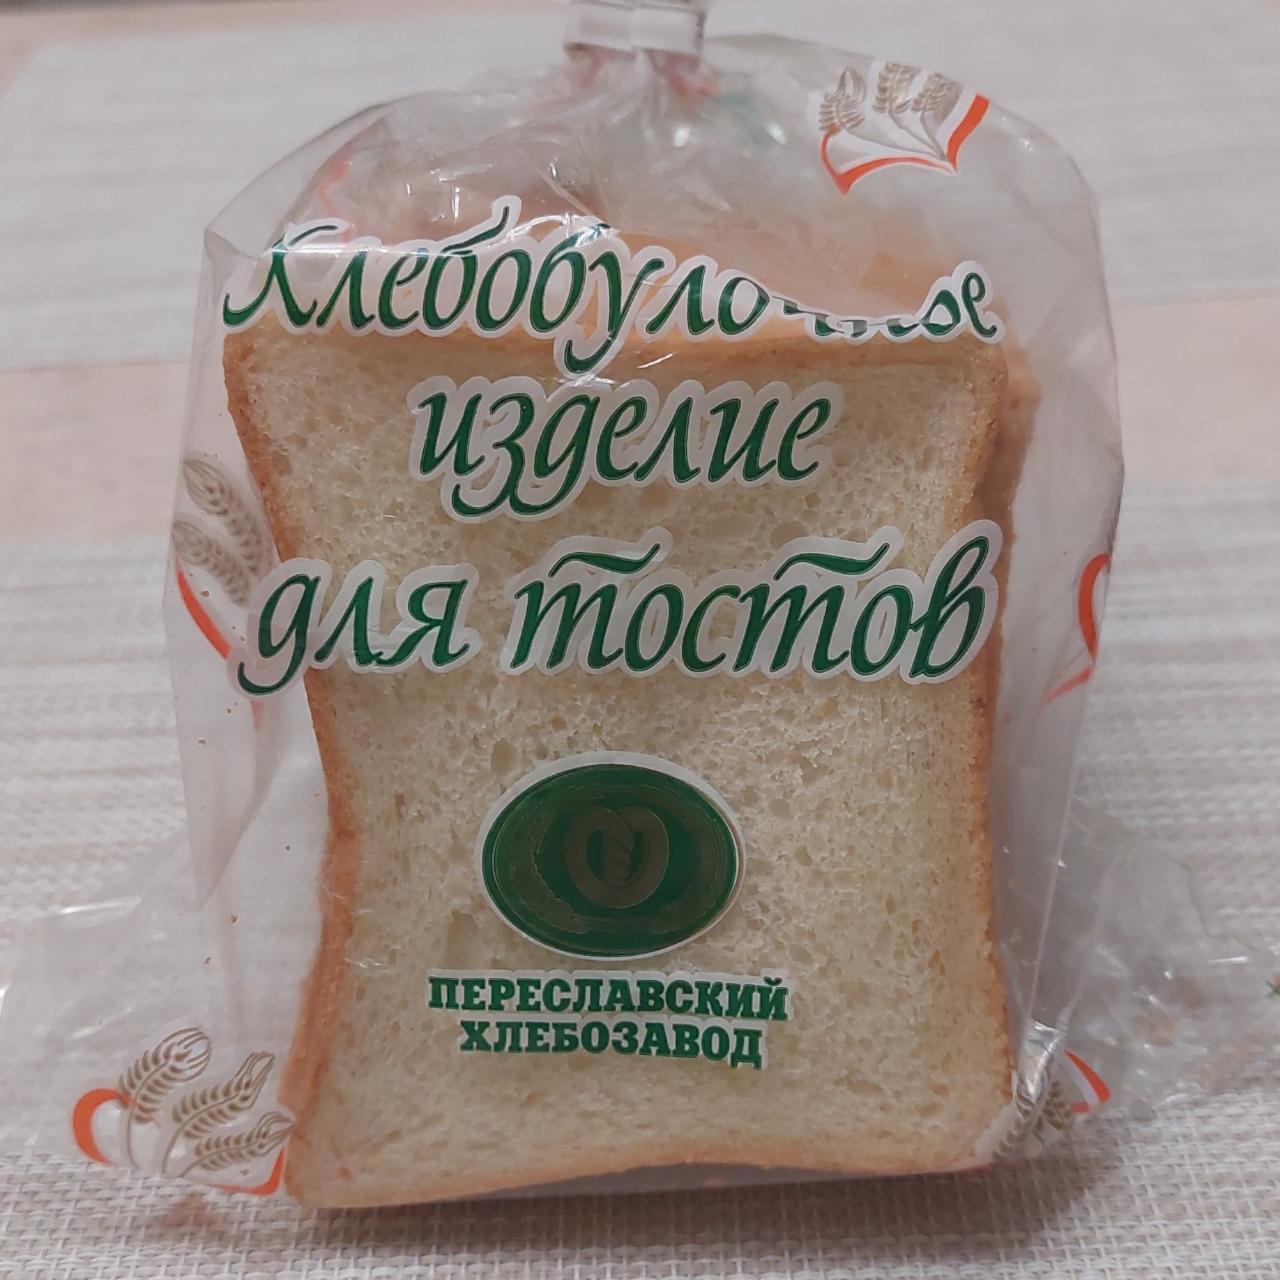 Фото - Хлебобулочное изделие для тостов Переславский хлебозавод